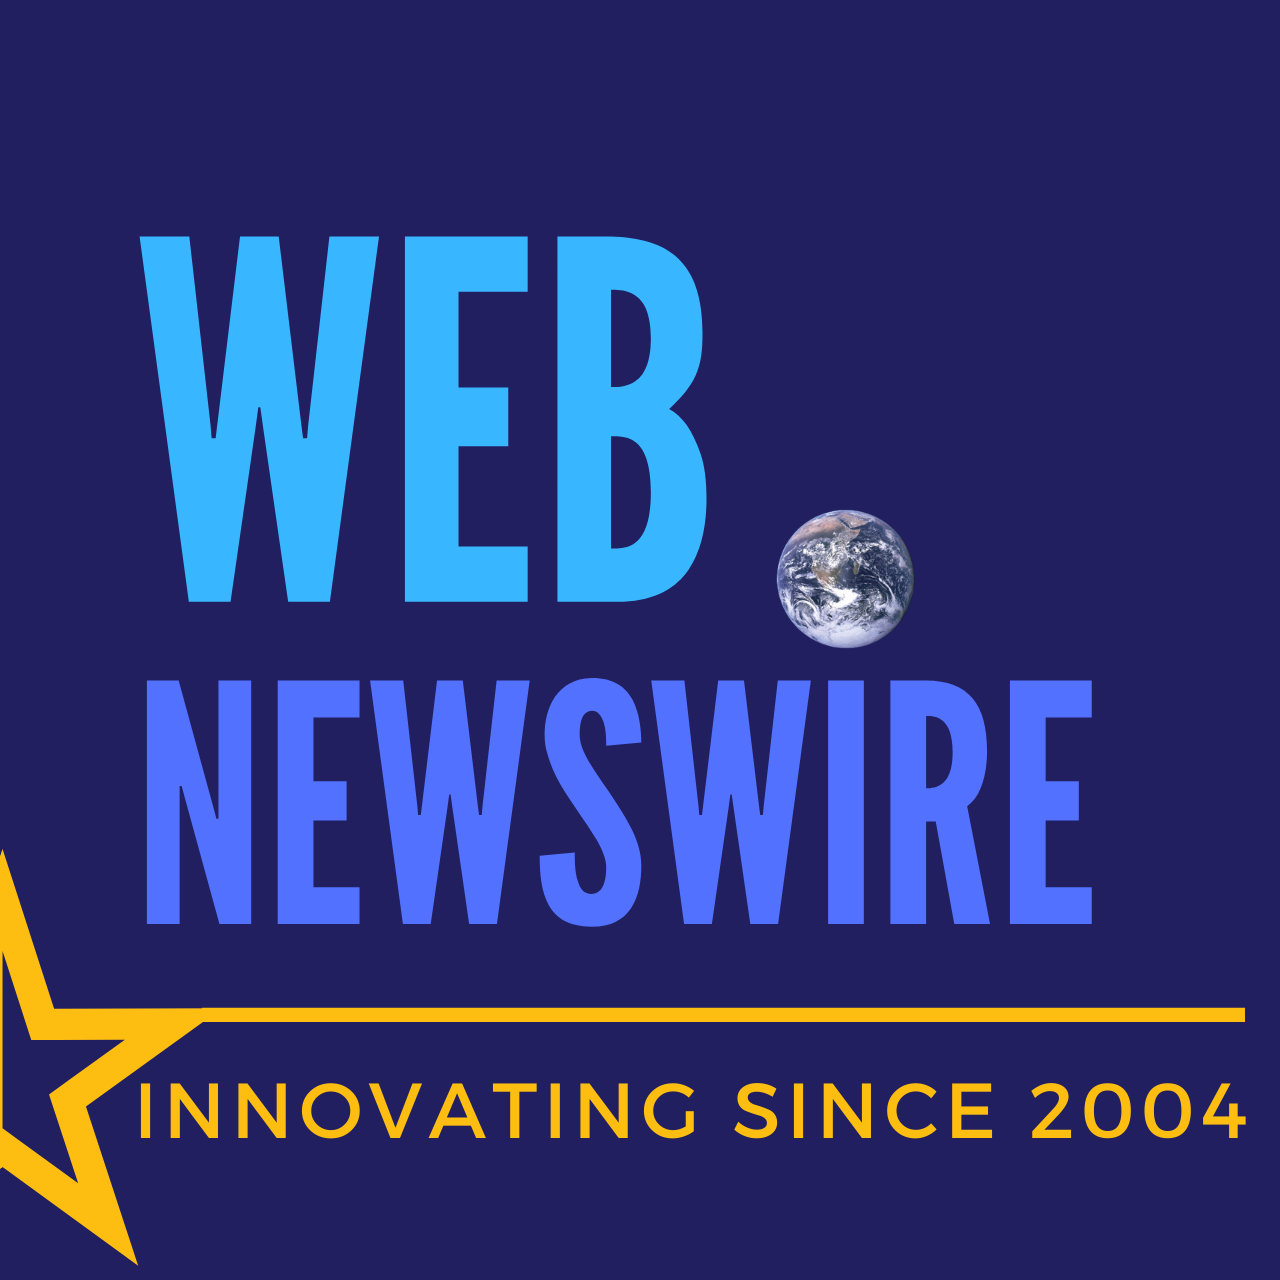 Webnewswire